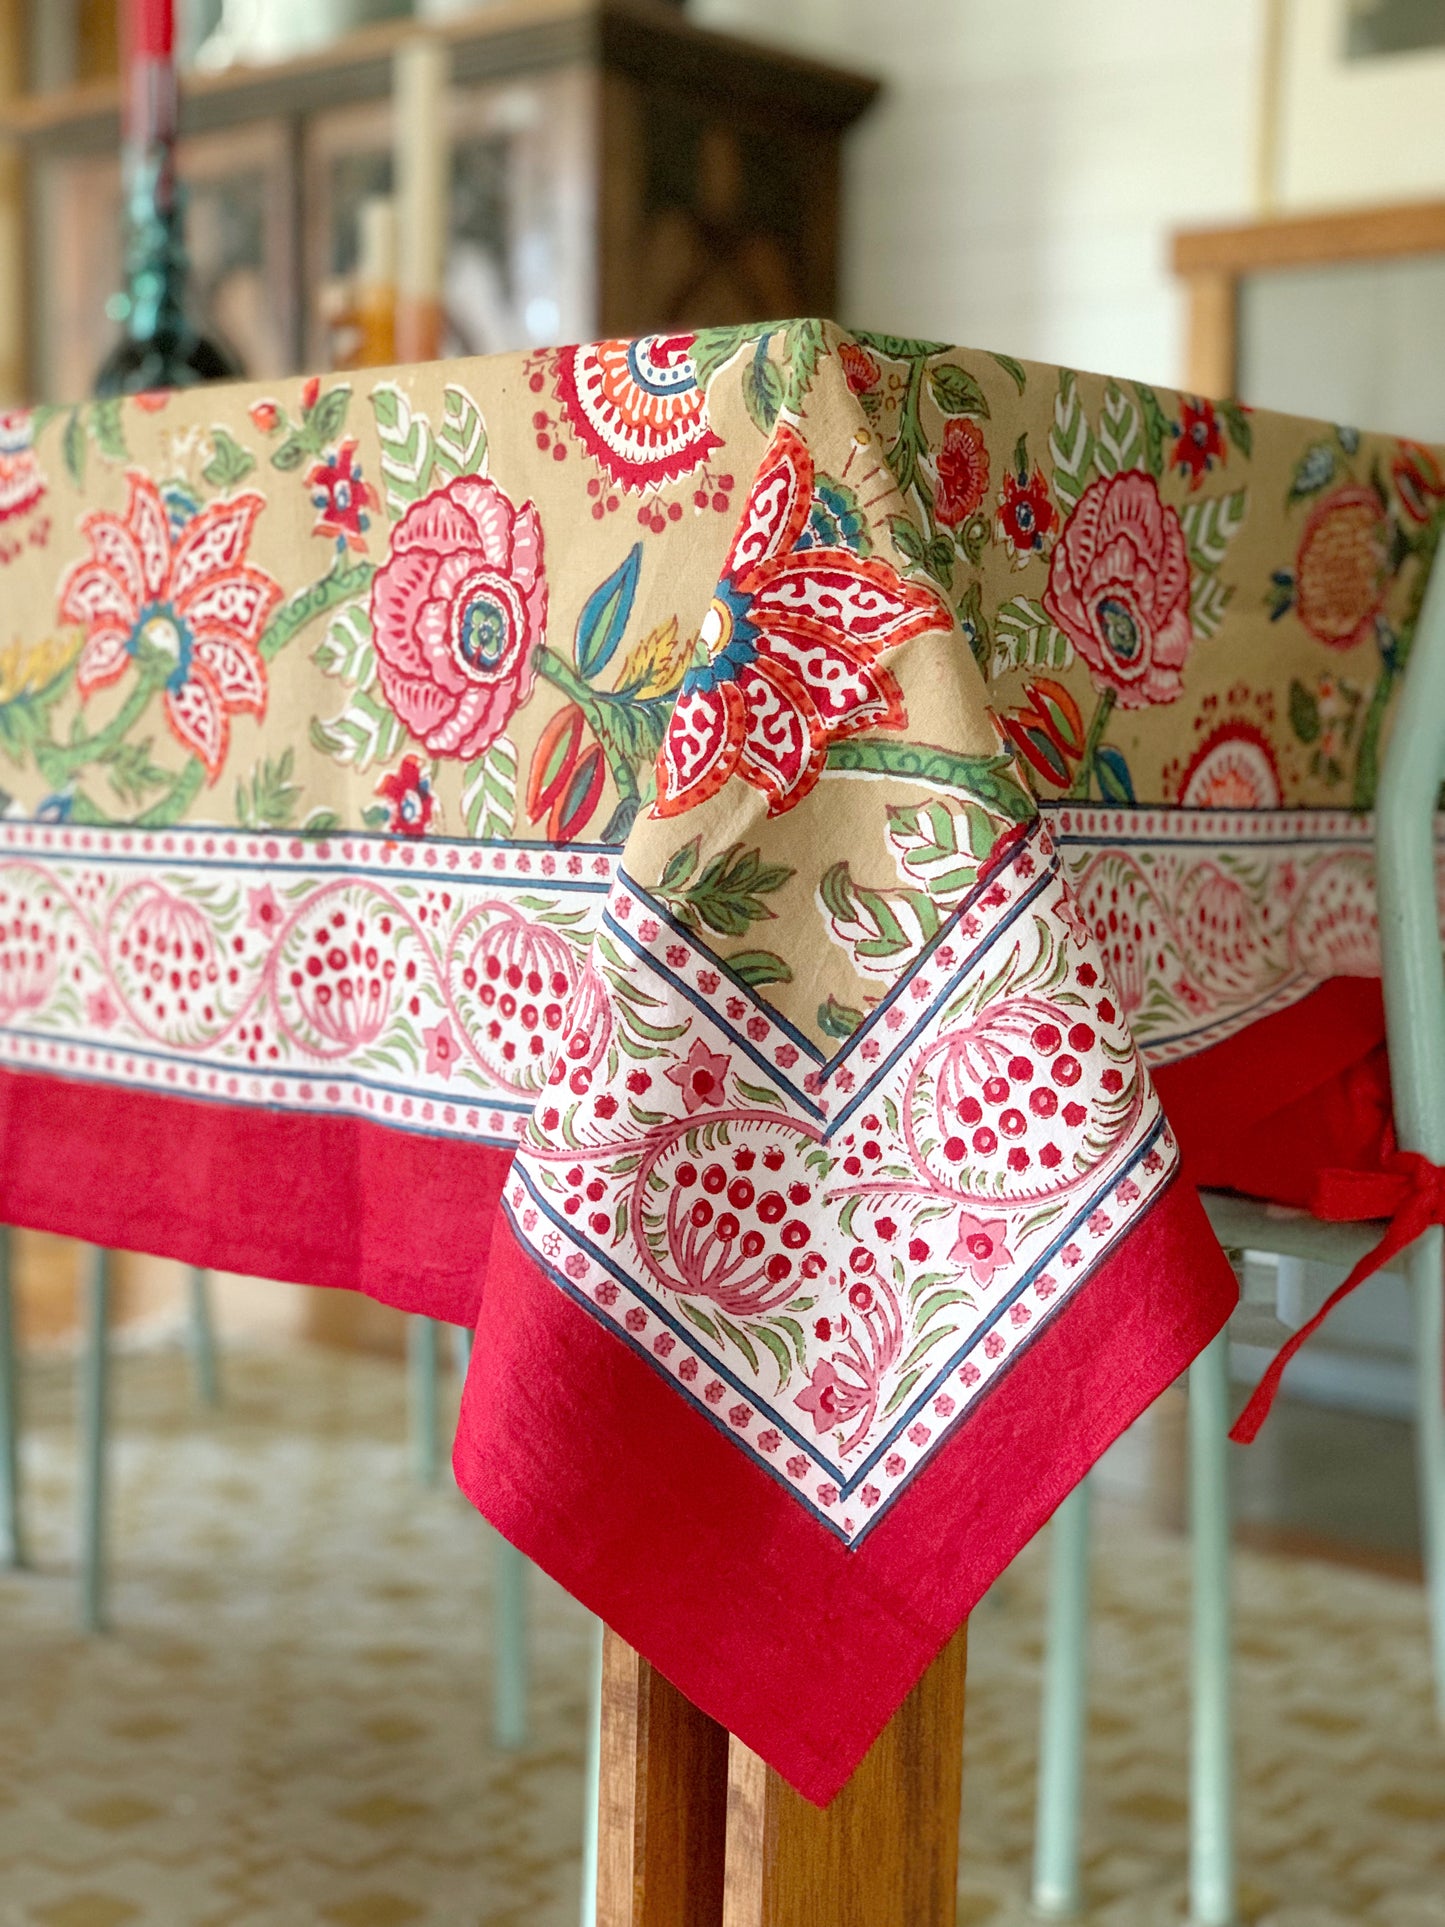 Mantel algodón puro estampado block print artesanal en India · Seis comensales · Mantel boho chic 100% algodón hindú · Beige flores colores